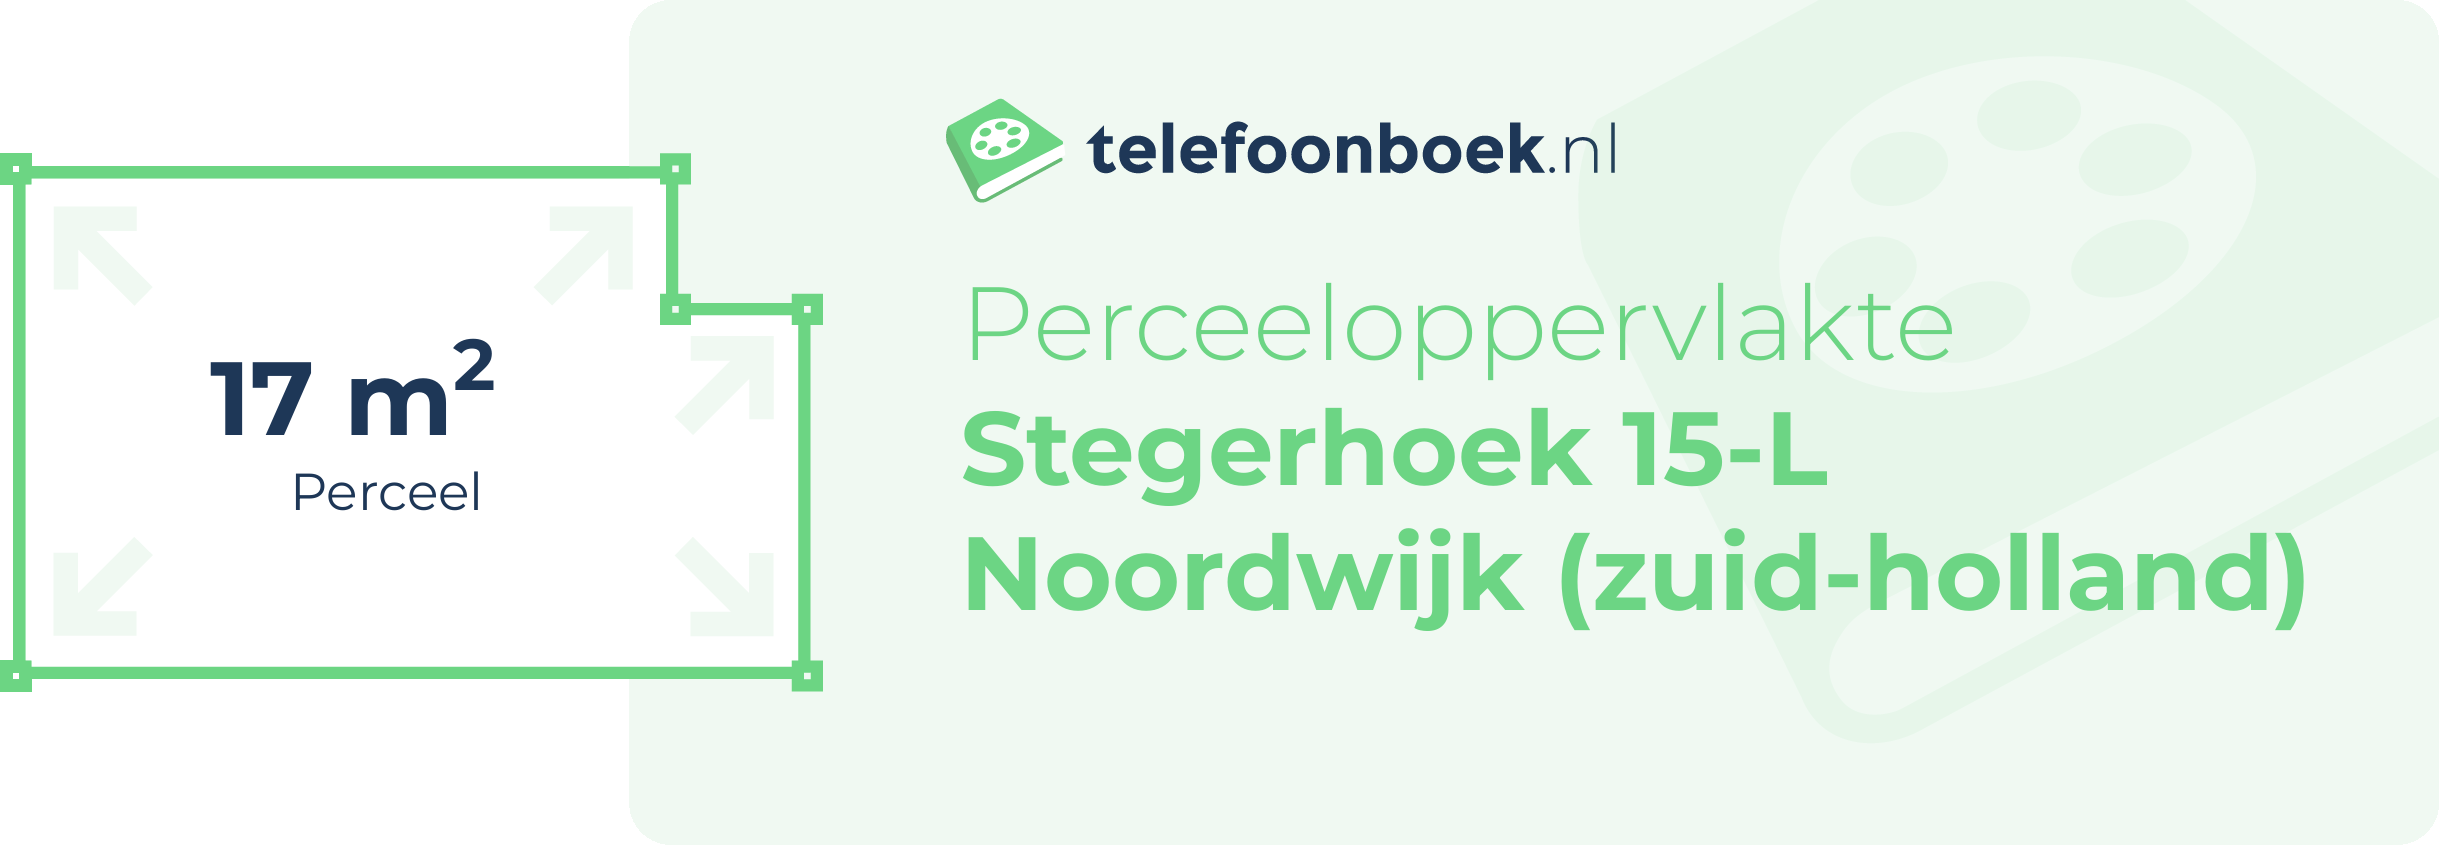 Perceeloppervlakte Stegerhoek 15-L Noordwijk (Zuid-Holland)